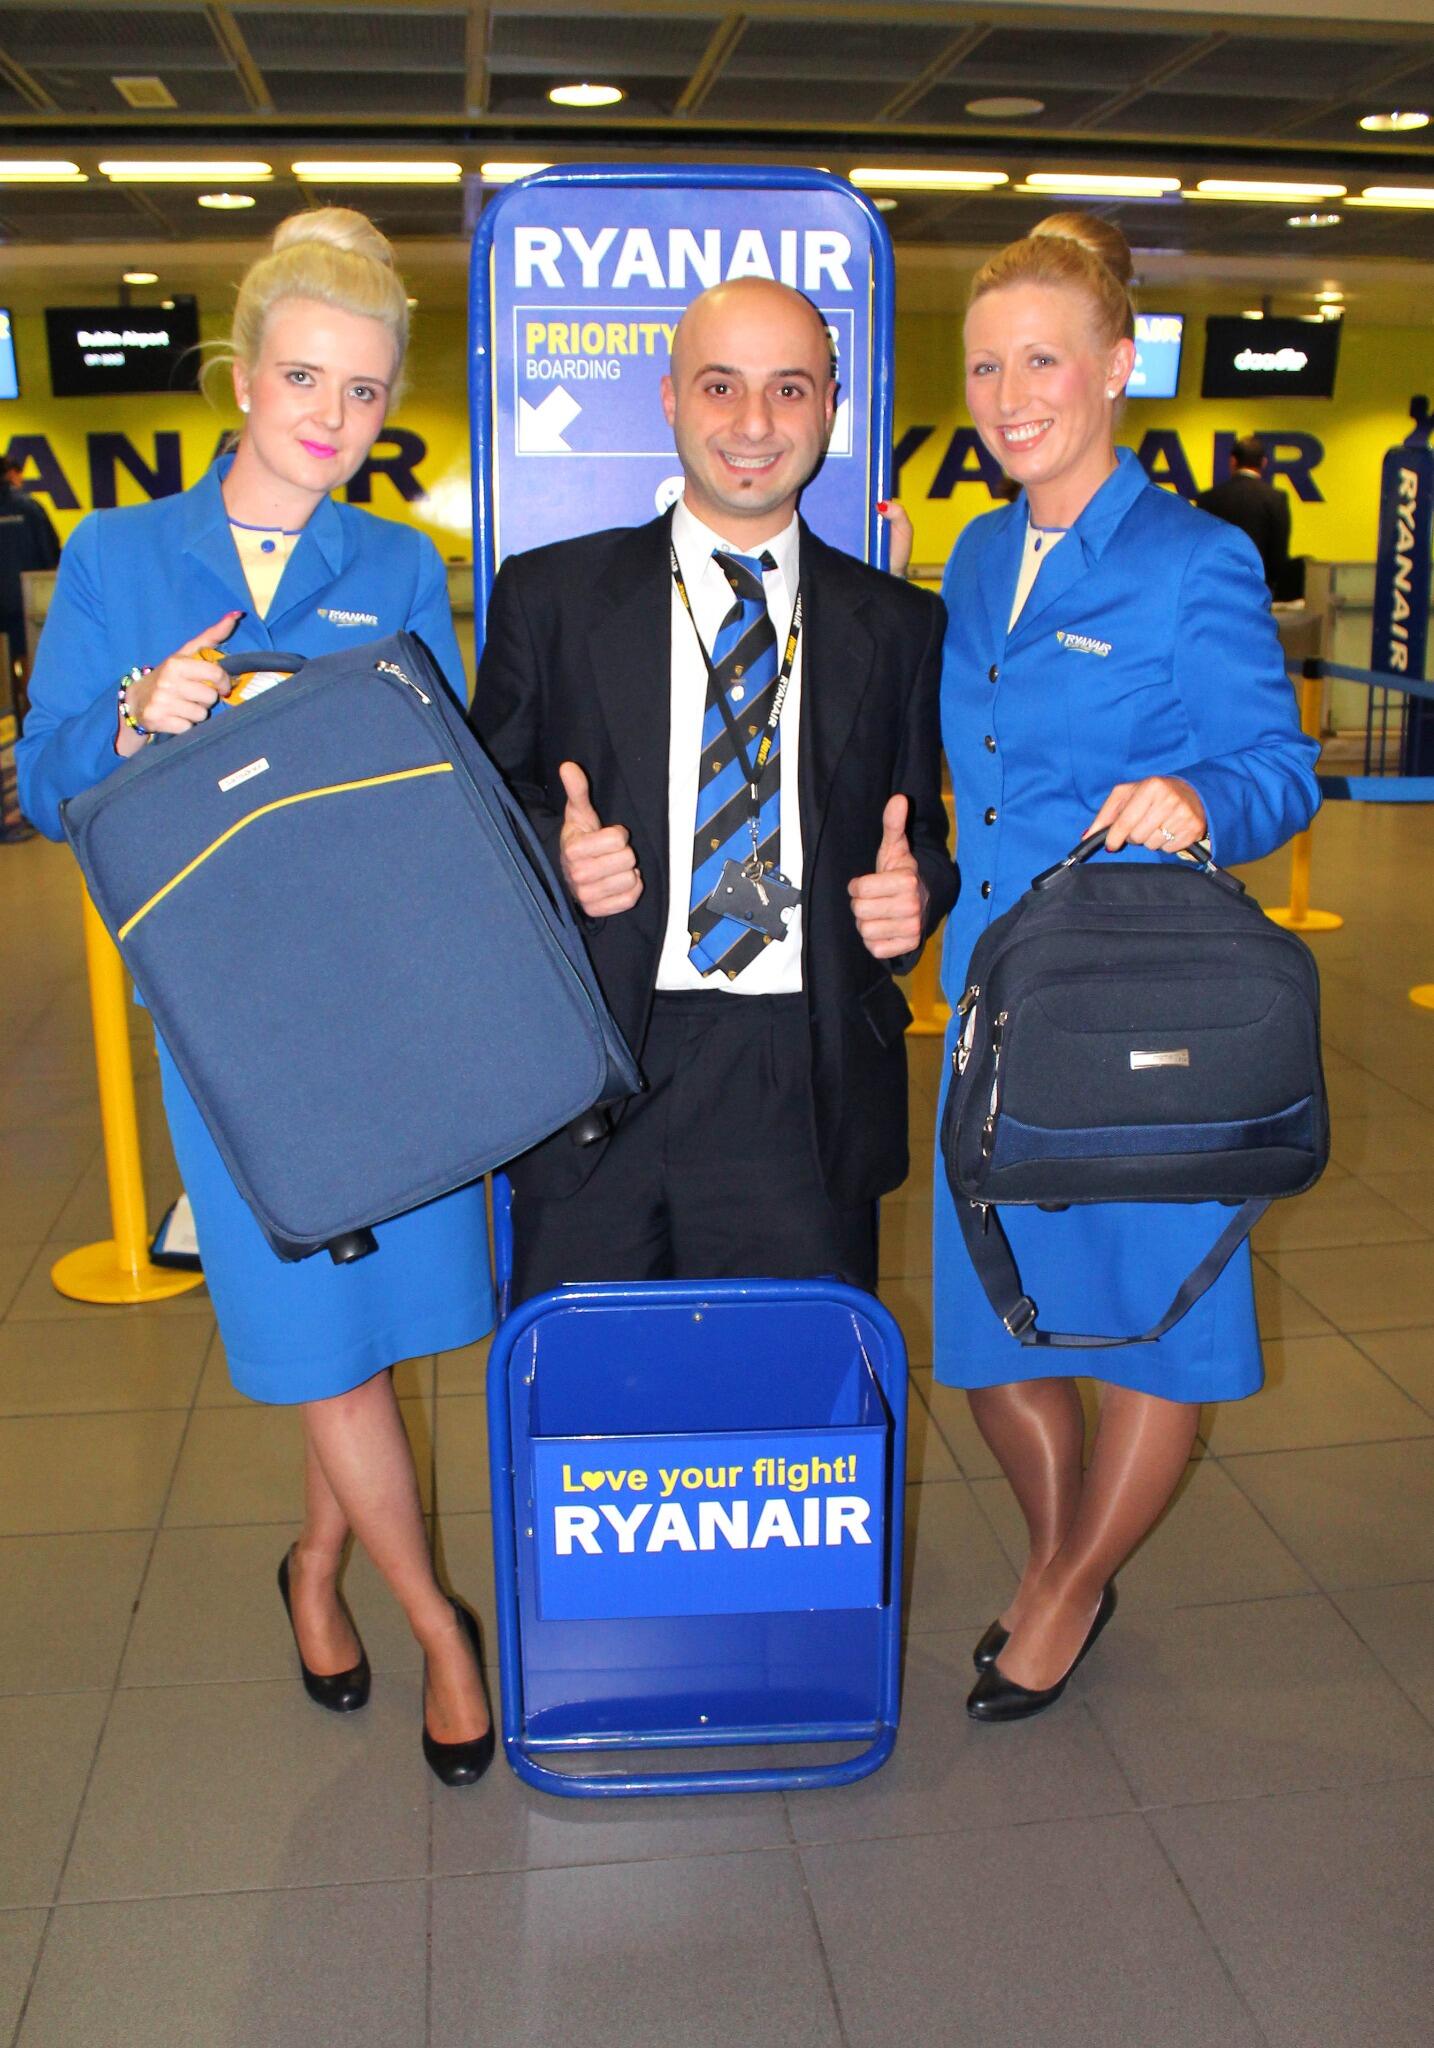 Ютэйр ручная кладь что можно. 10 Кг Cabin Bag Ryanair. Ryanair ручная кладь. Ryanair Cabin Baggage 10 kg. Авиакомпания Райнэйр.